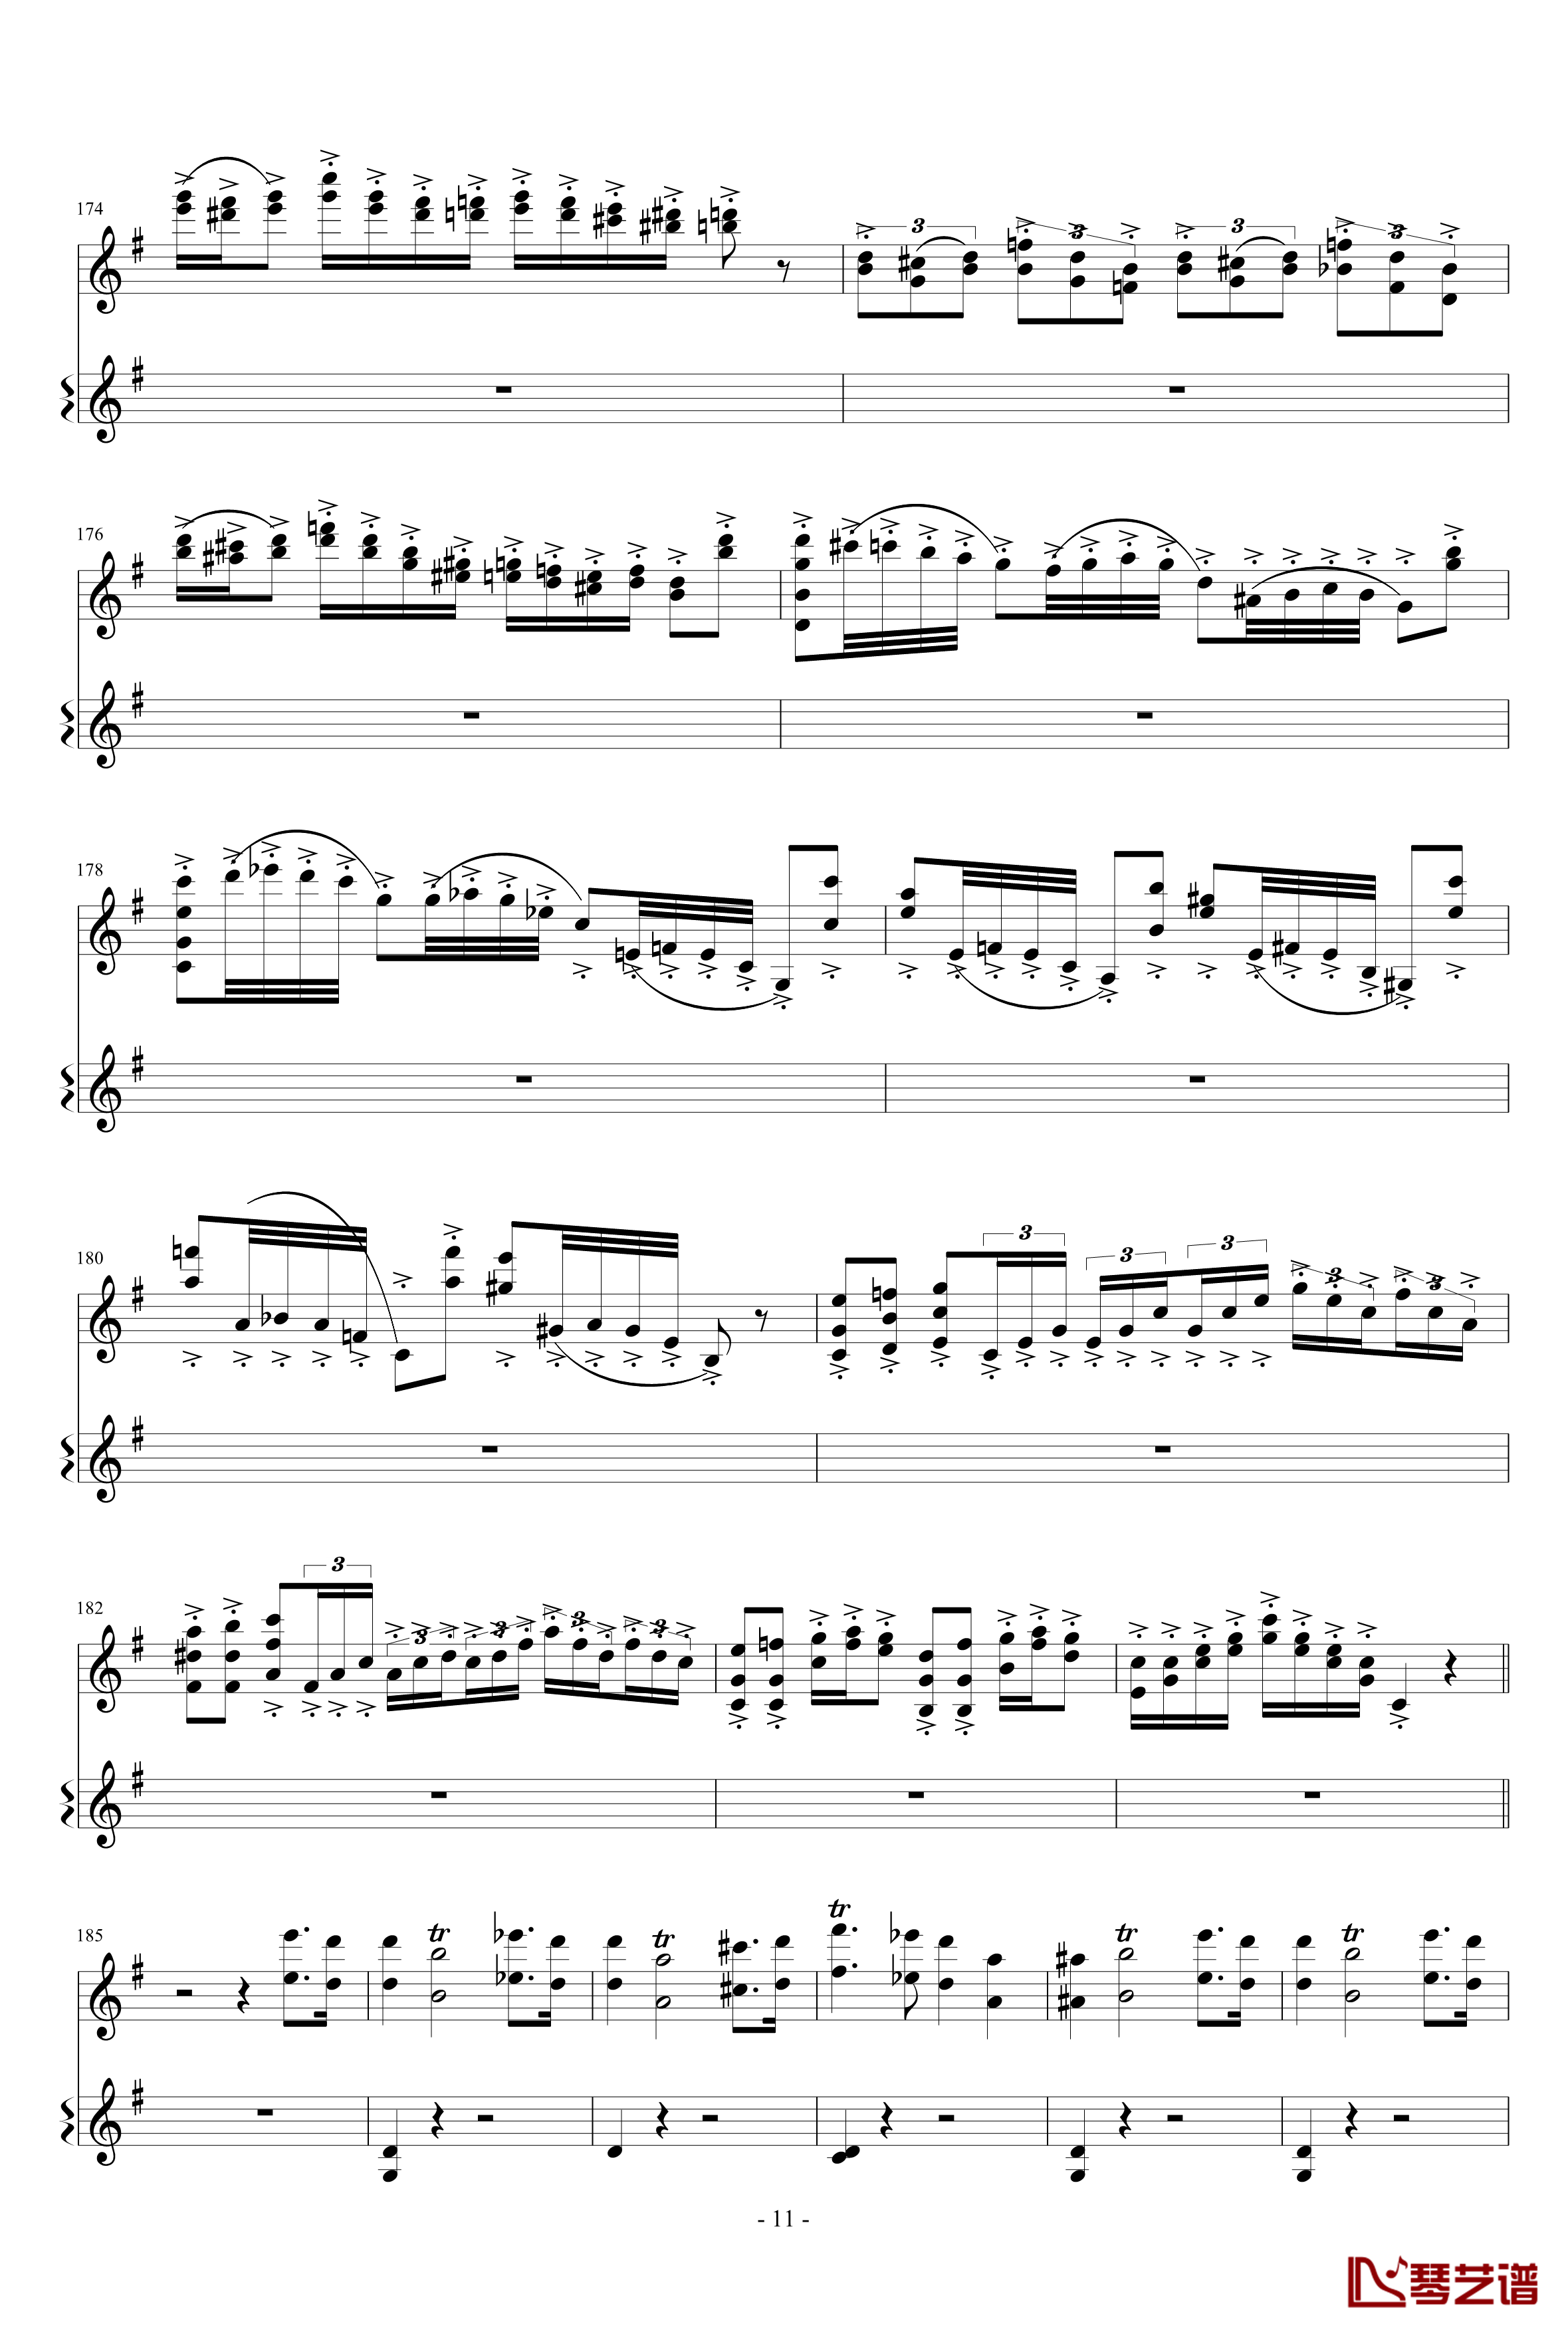 意大利国歌变奏曲钢琴谱-只修改了一个音-DXF11